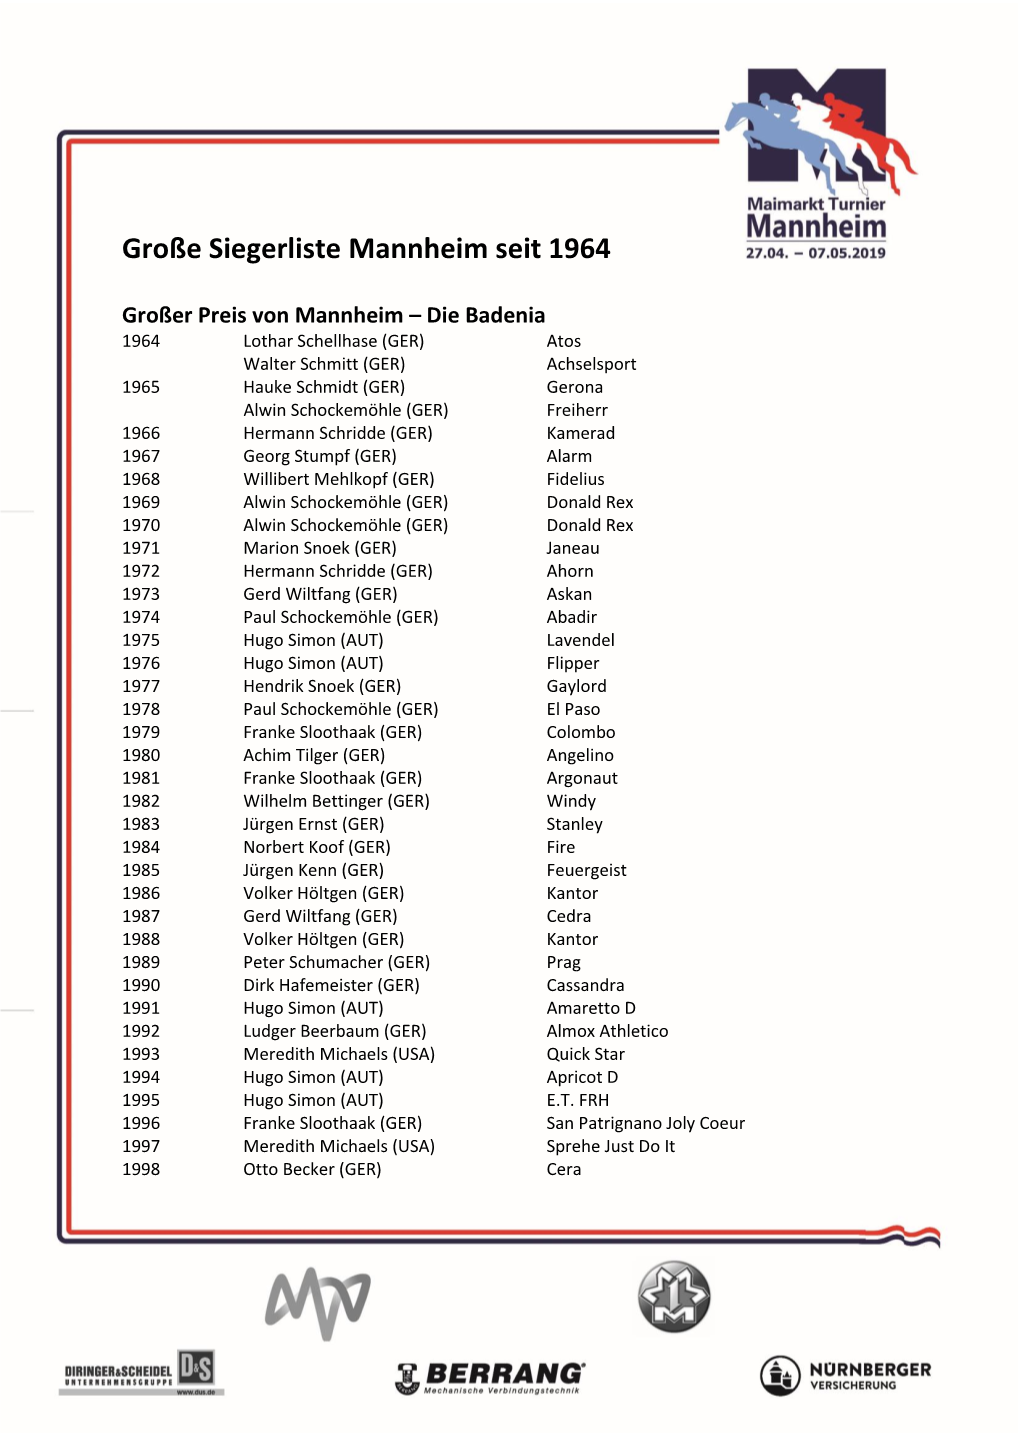 Große Siegerliste Mannheim Seit 1964